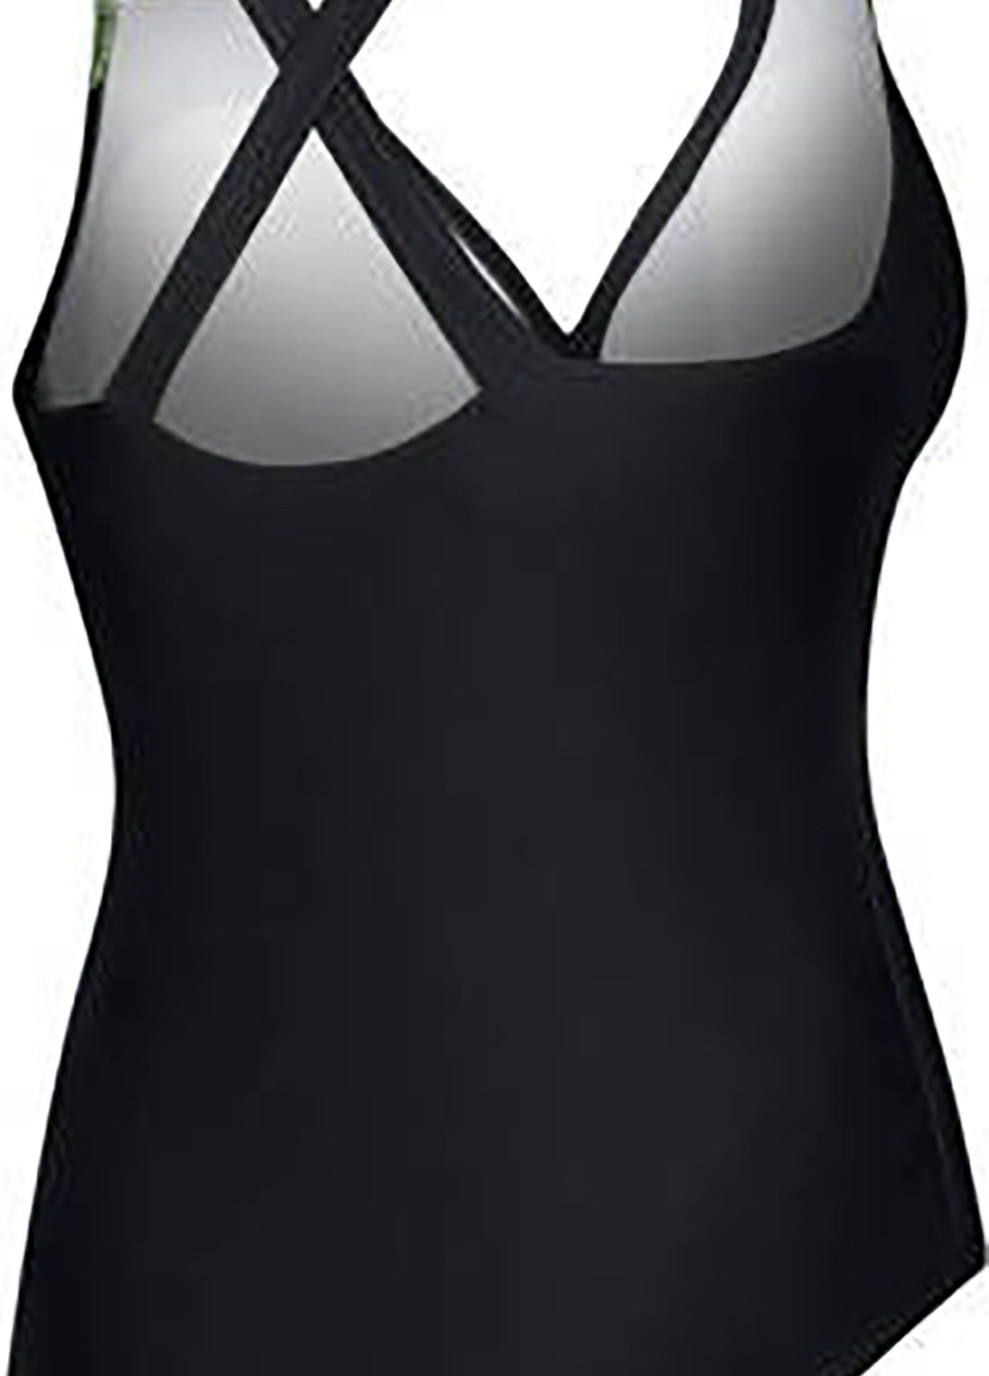 Комбинированный демисезонный купальник роздельный для женщин greta 55 черный, салатовый жен Aqua Speed